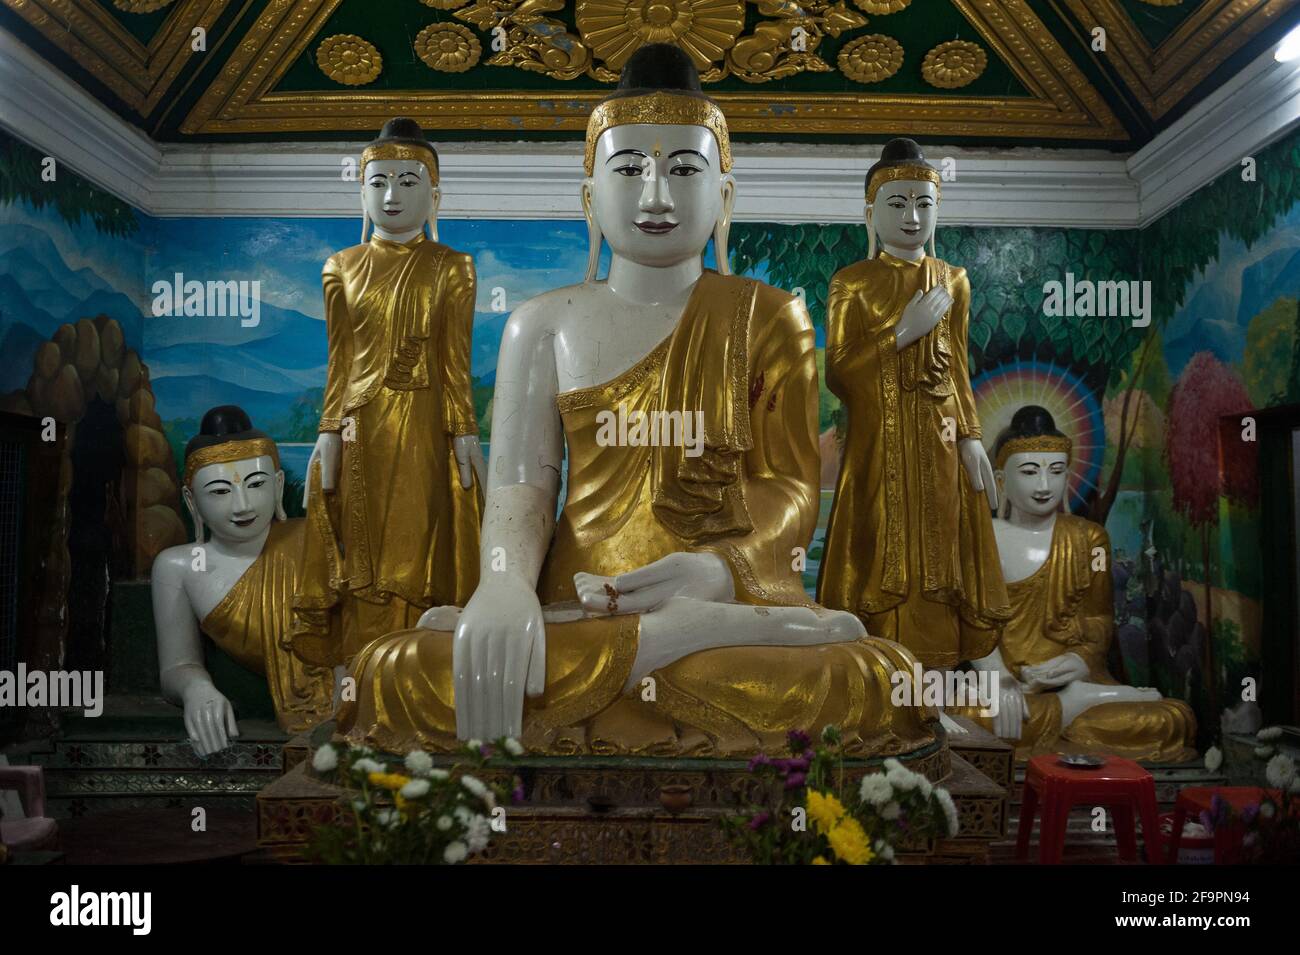 30.01.2017, Mawlamyine, Mon State, Myanmar - EINE Gruppe von Buddha-Figuren in der Kyaikthanlan-Pagode, der höchsten buddhistischen Pagode der Stadt. 0SL170130D052C Stockfoto